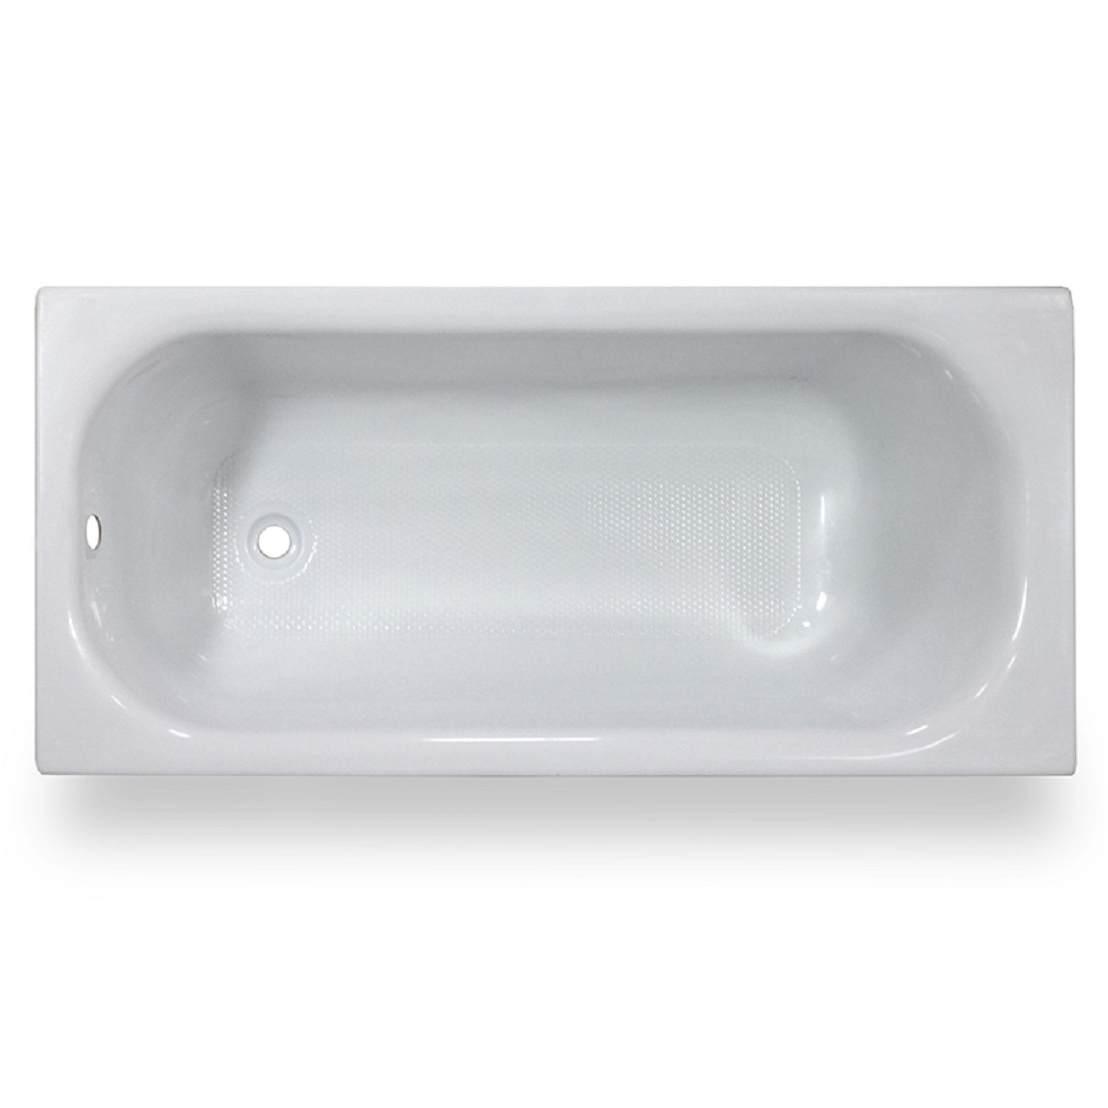 Акриловая ванна Тритон Ультра 140, цвет белый Щ0000017118 - фото 1